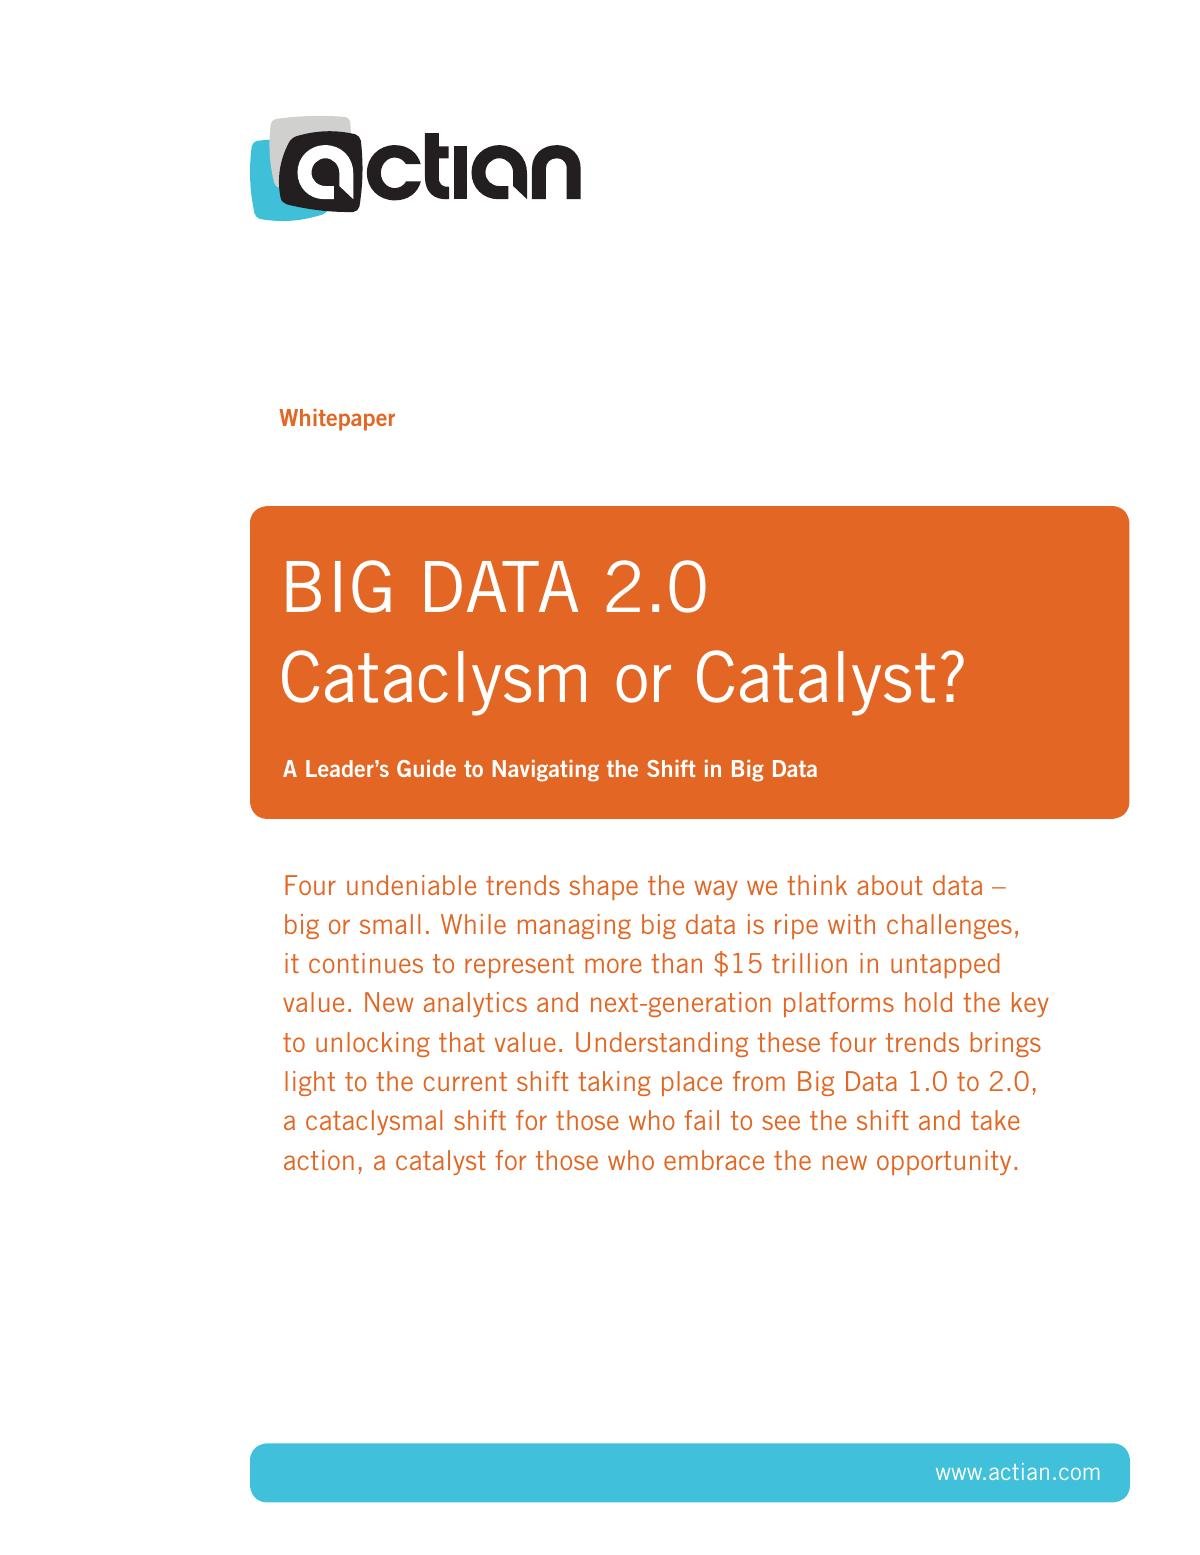 BIG DATA 2.0 Cataclysm or Catalyst?